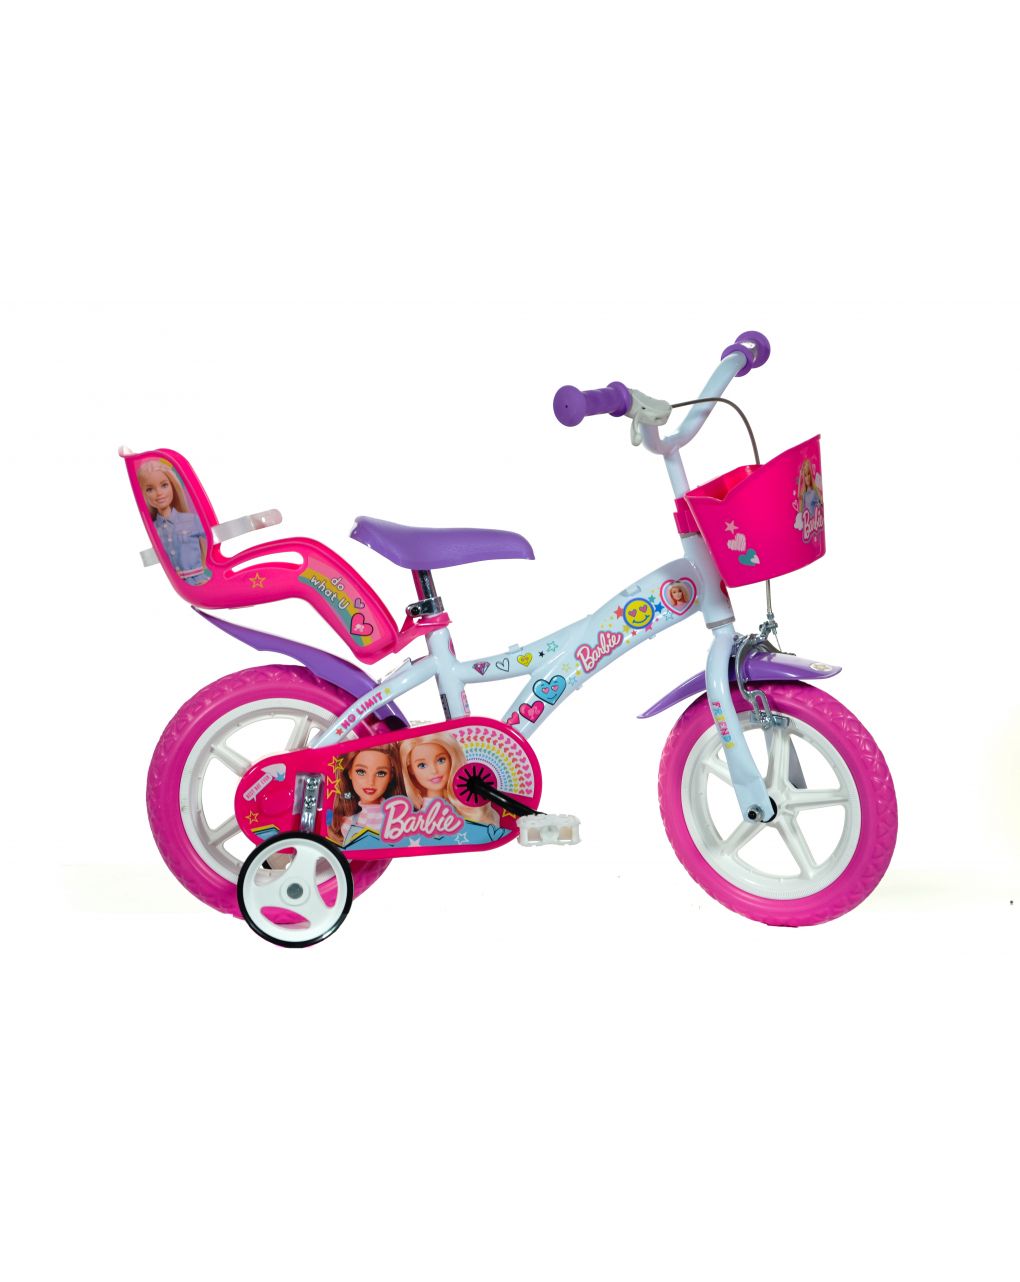 Bicicleta niño 12" 3-5 años - barbie - Barbie